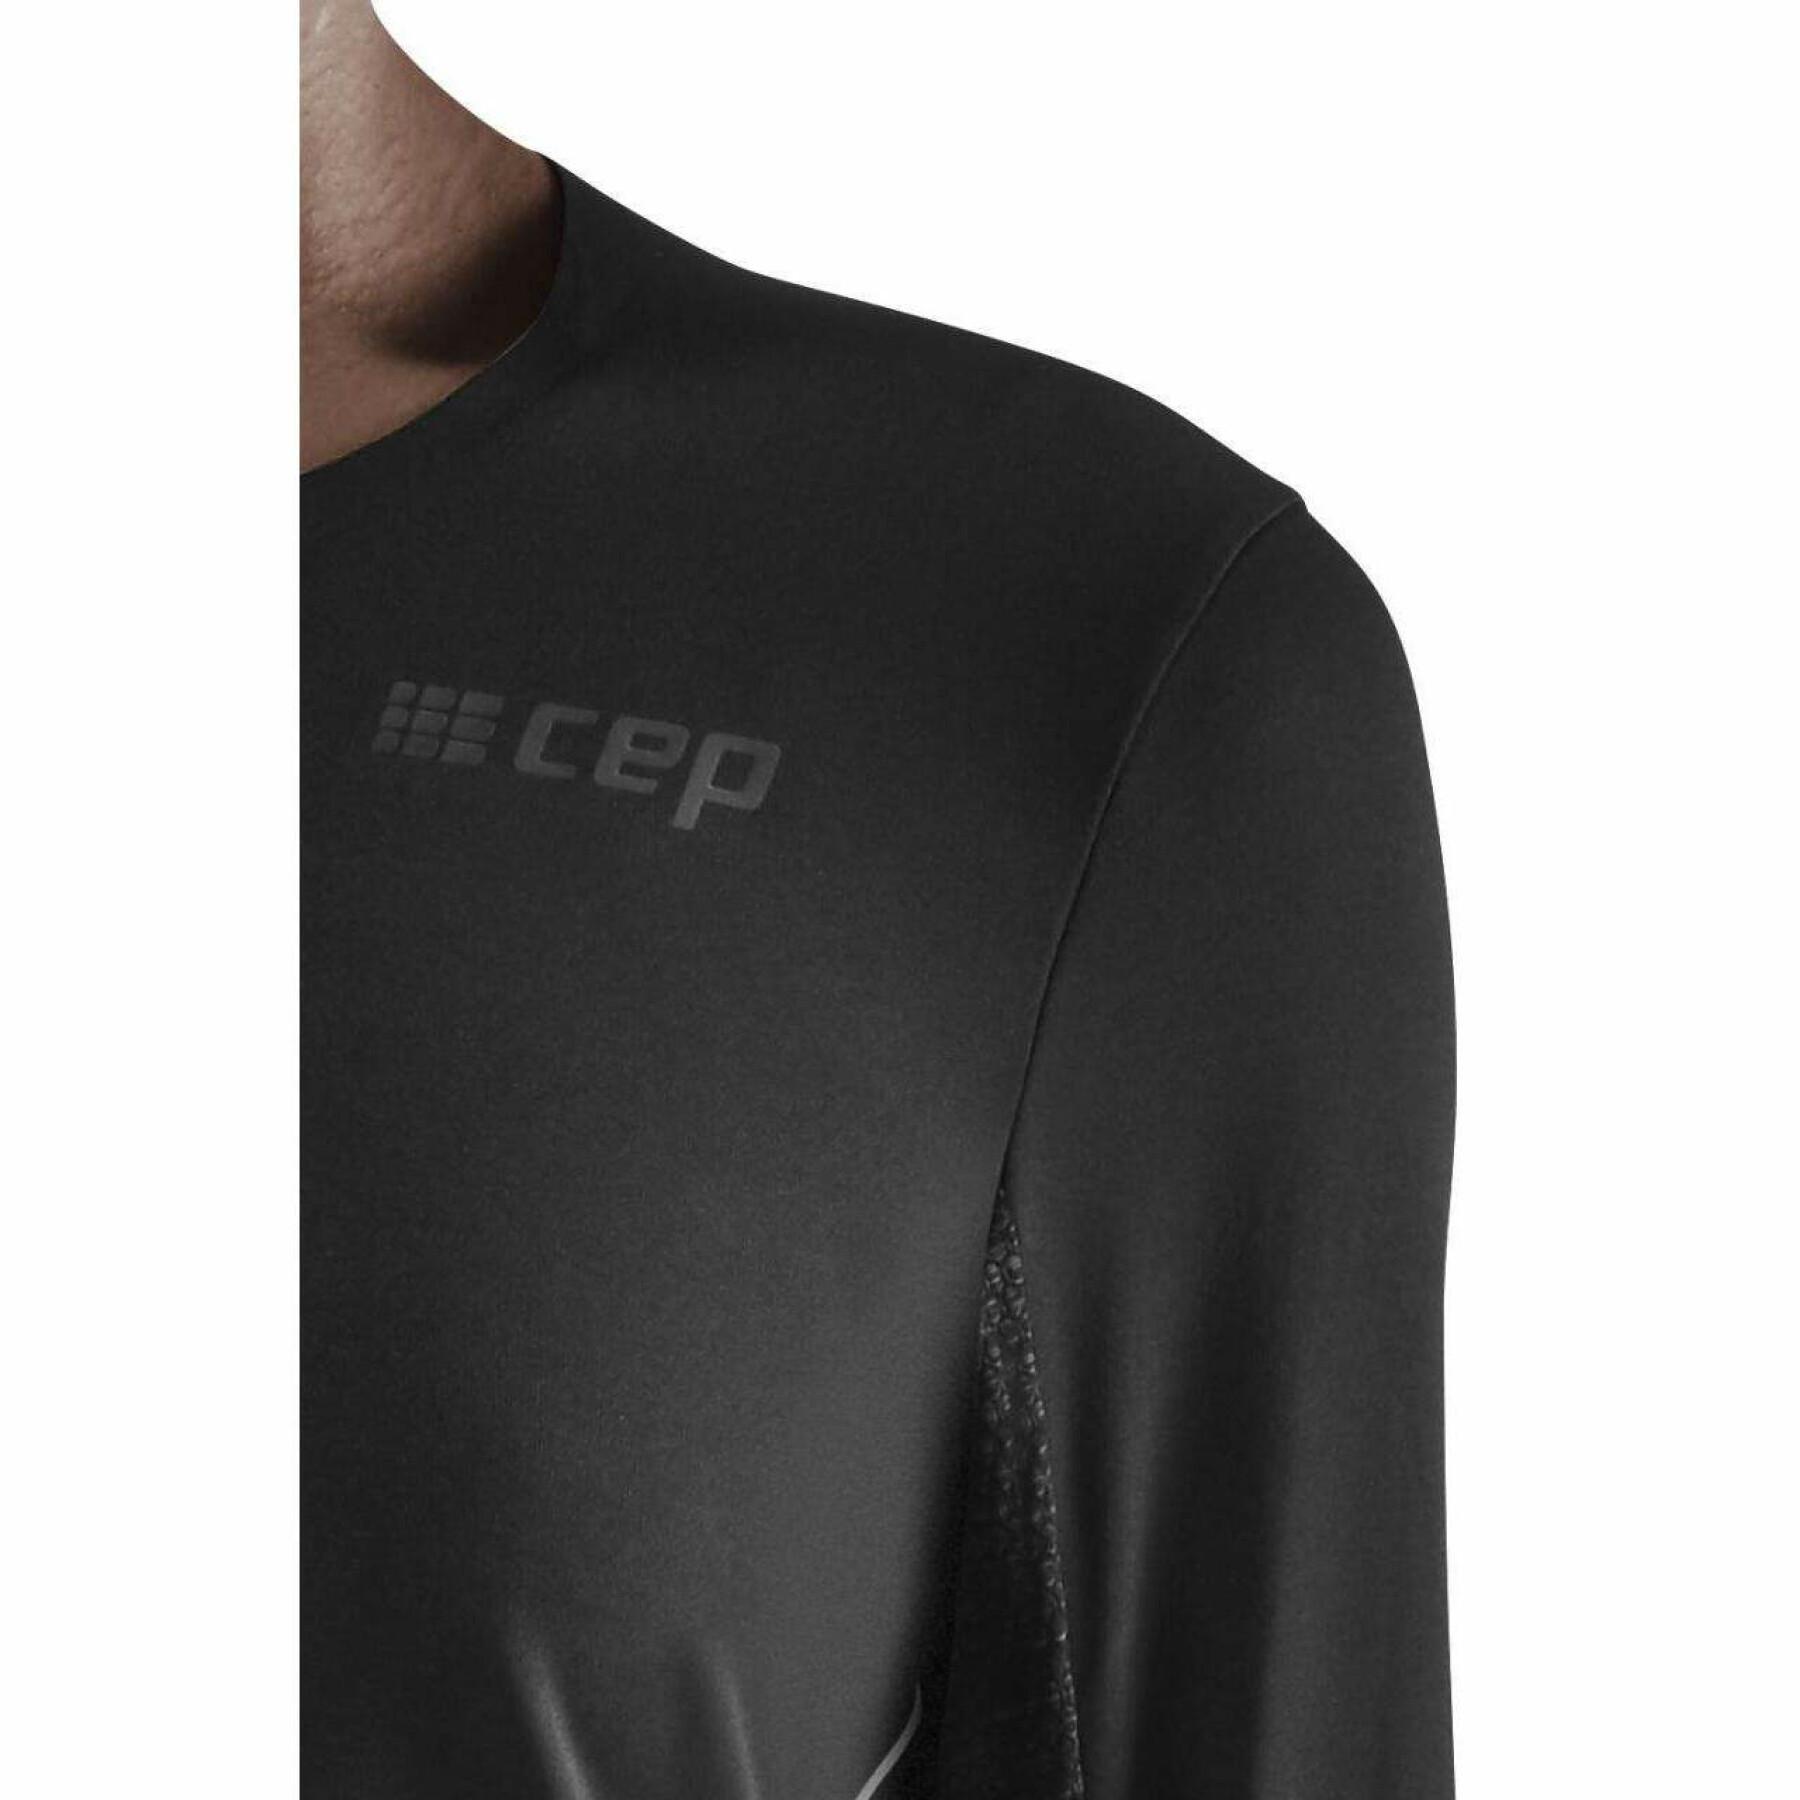 Camisa de manga comprida para mulheres CEP Compression